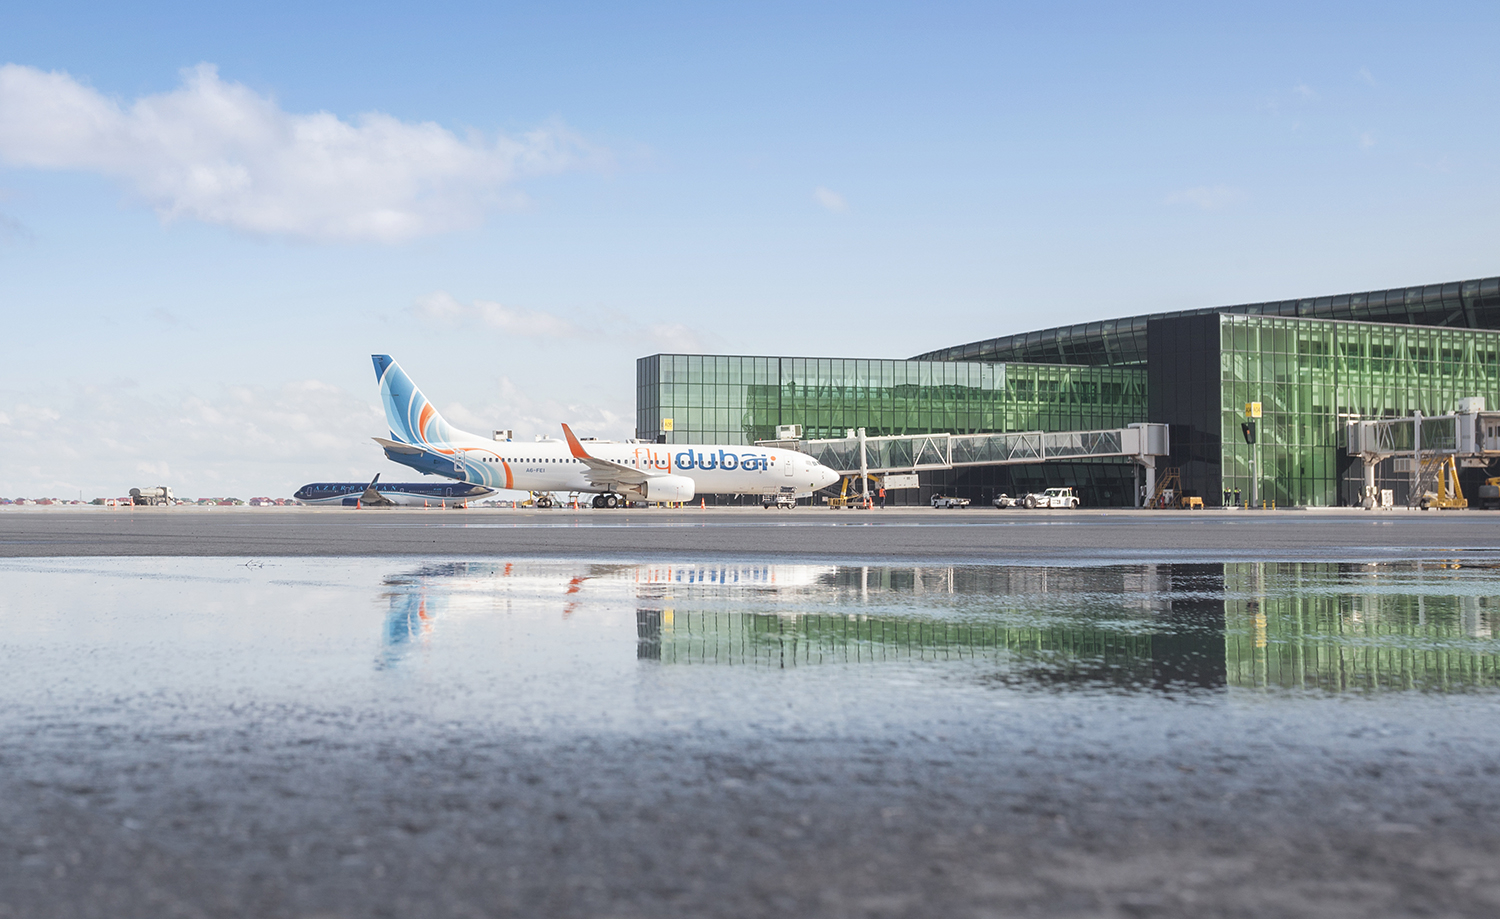 Авиакомпания FlyDubai начала выполнять прямые рейсы по маршруту Дубай-Баку-Дубай